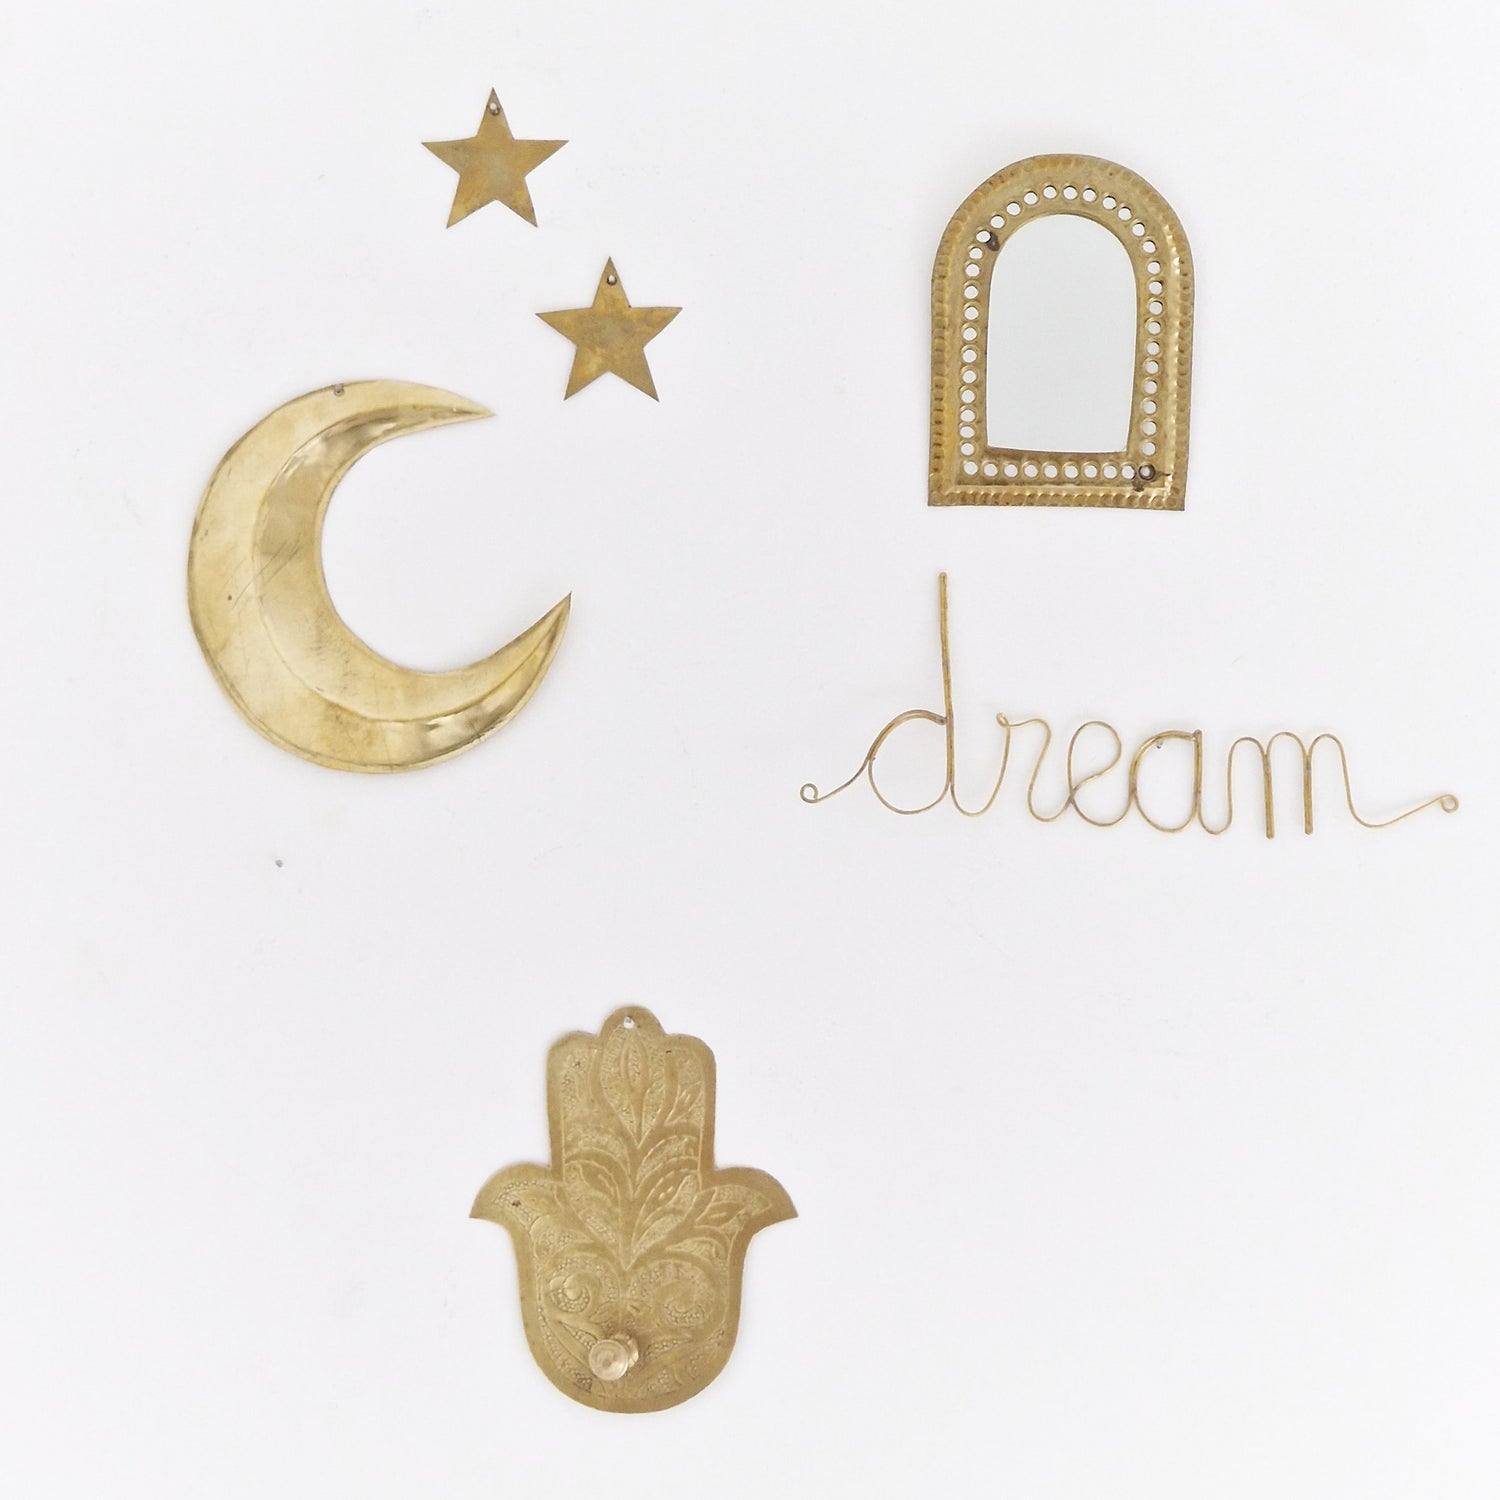 Sfeerfoto van het messing draad woord Dream gecombineerd met messing maantje, sterren, hamsa handje en spiegeltje